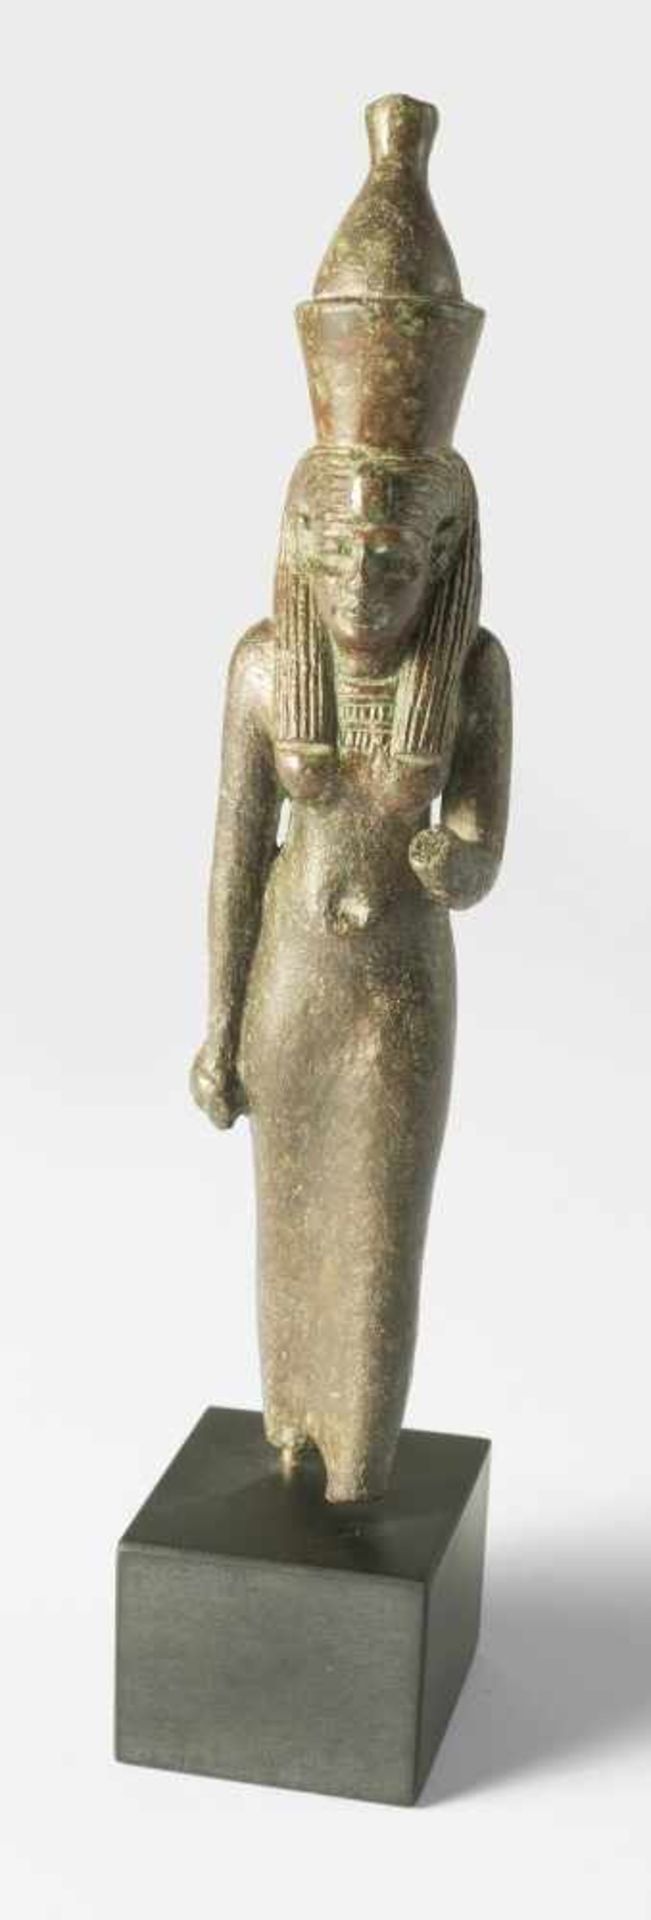 Statuette der Göttin Mut in SchrittstellungBronze, Ägypten, um 600 v. Chr. oder früher13,1 cm